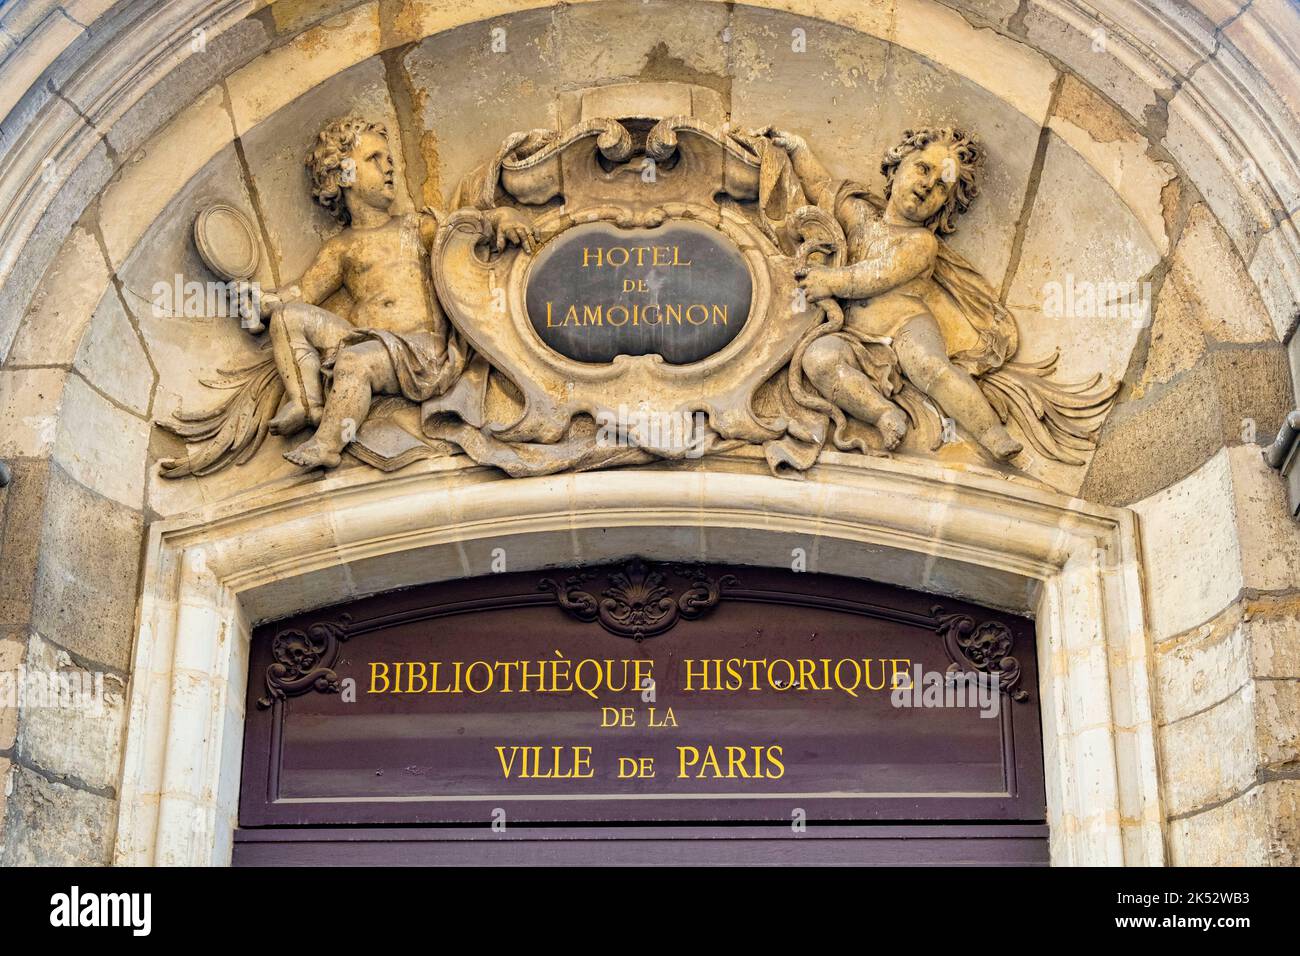 France, Paris, Marais district, Hotel de Lamoignon, Historical Library of the City of Paris Stock Photo